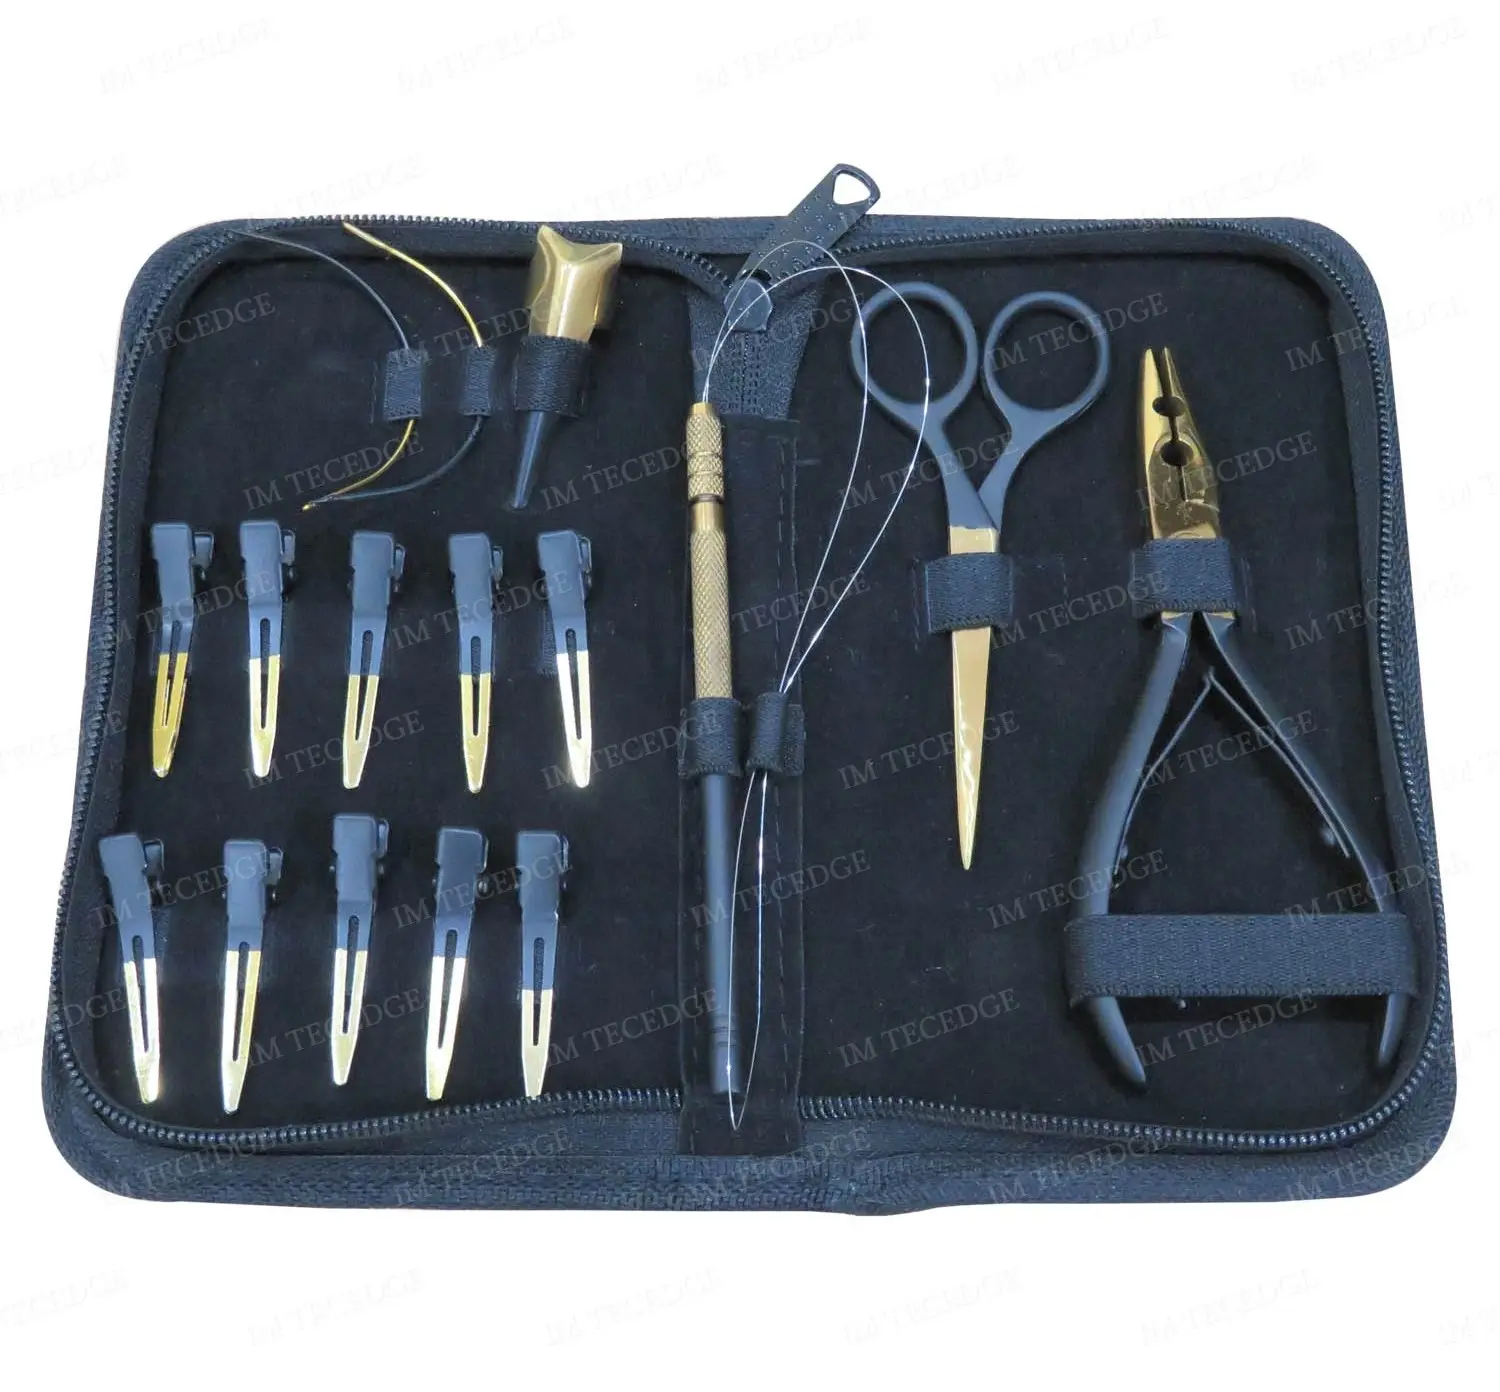 Alles über Haar verlängerungen Gold Schwarz Zwei Farben Zangen Werkzeuge Salon Kit Set Neuankömmling für Haar verlängerungen Benutzer